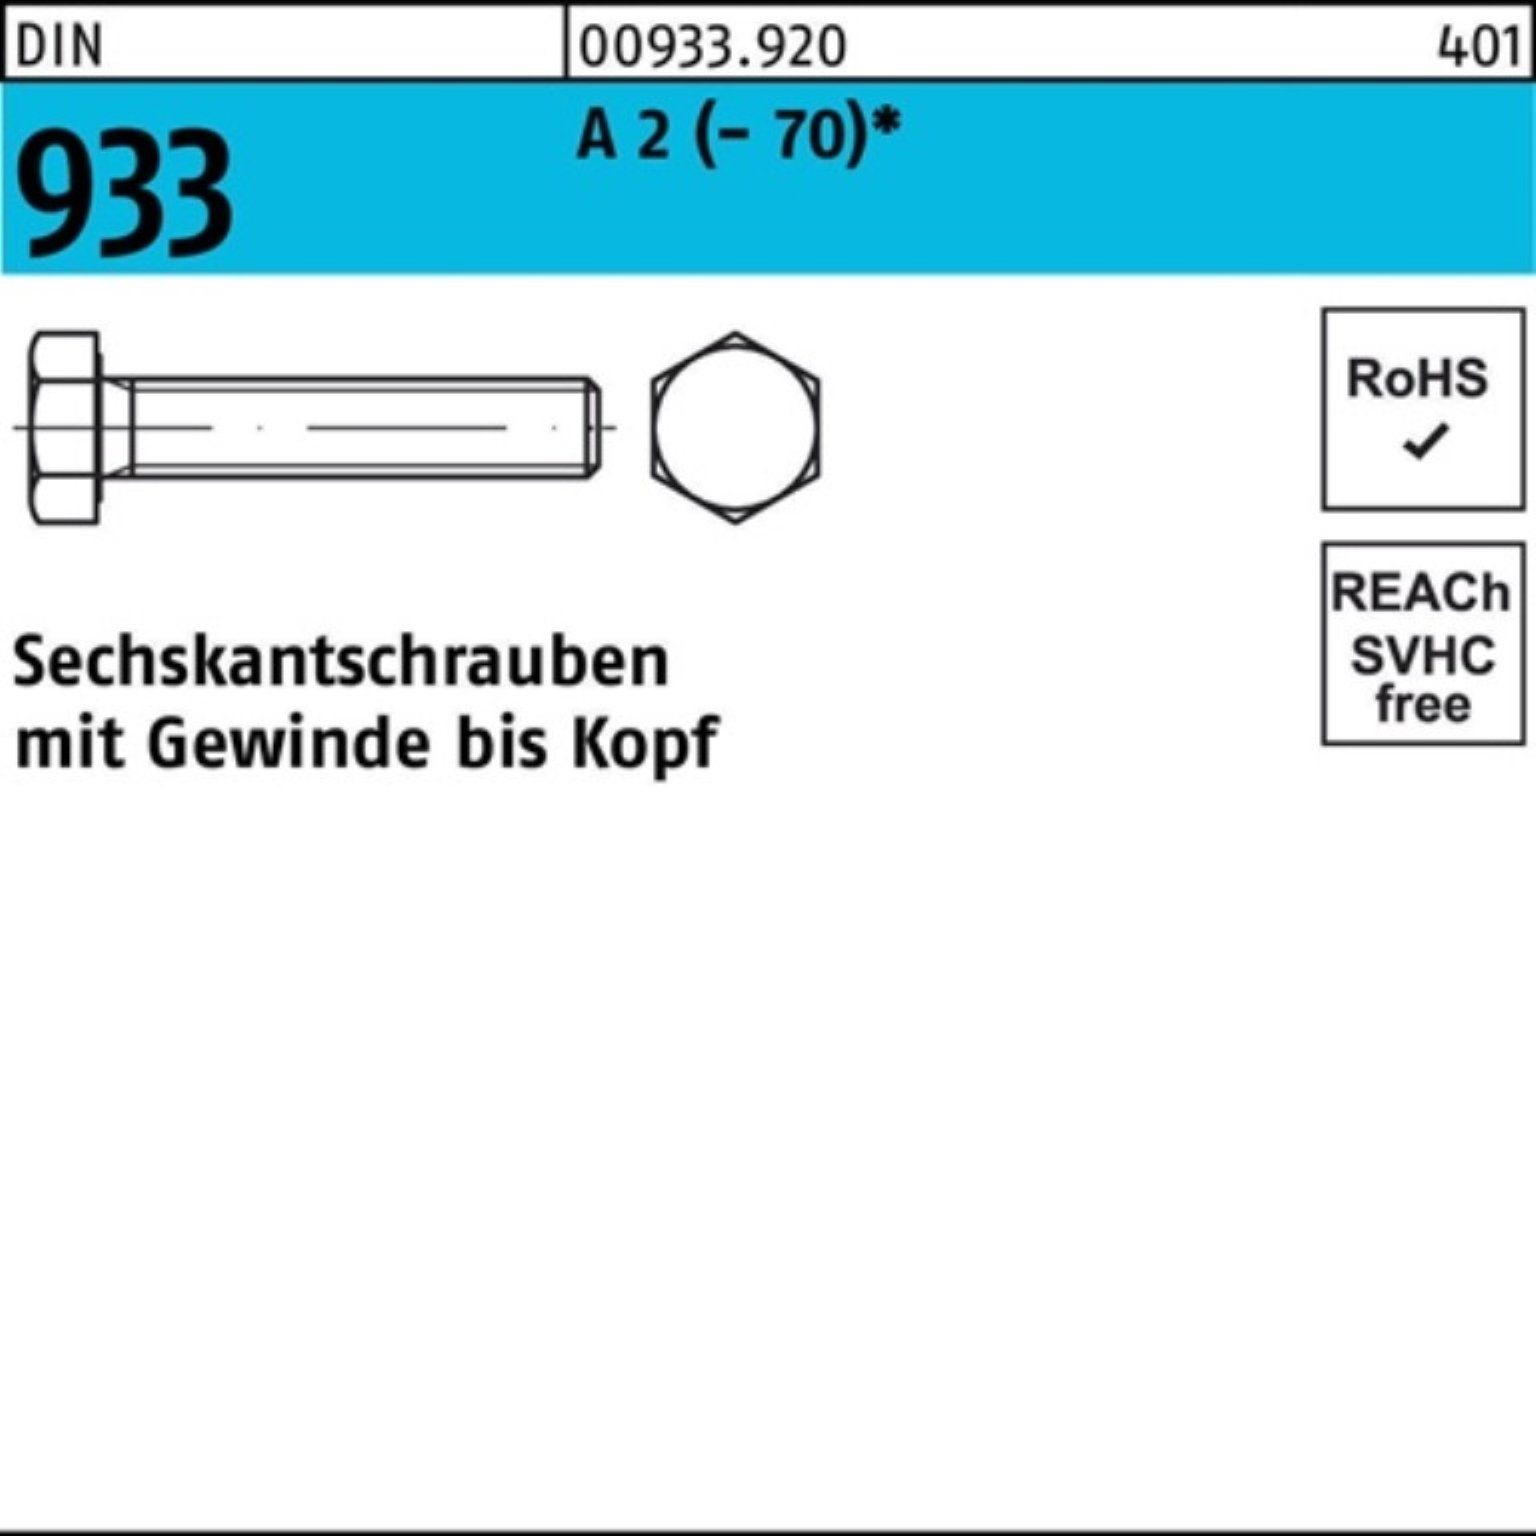 Reyher Stück 933 Sechskantschraube (70) 2 Pack A DIN M16x Sechskantschraube VG 150 25 100er